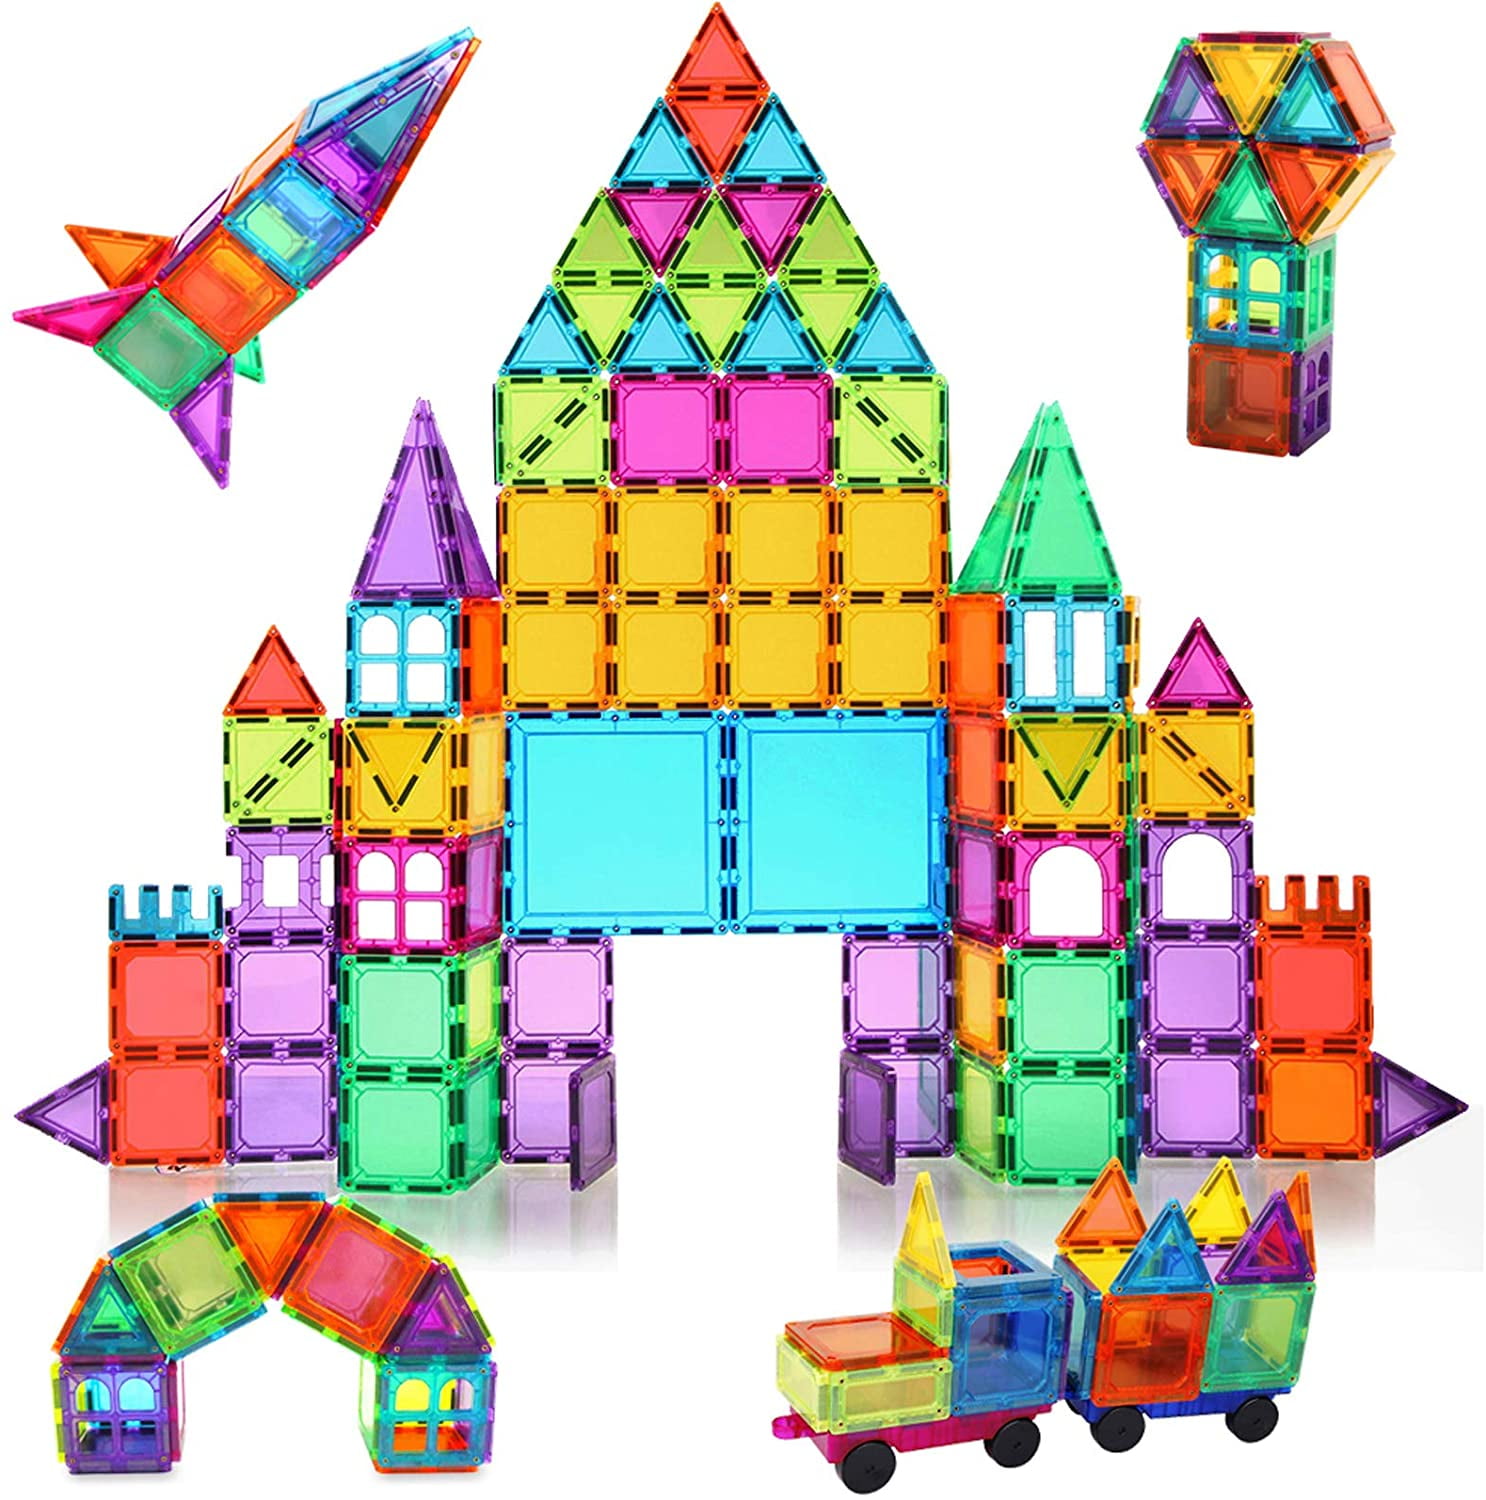 PicassoTiles Magnetic Building Block Set: 33 Piece 3D Color